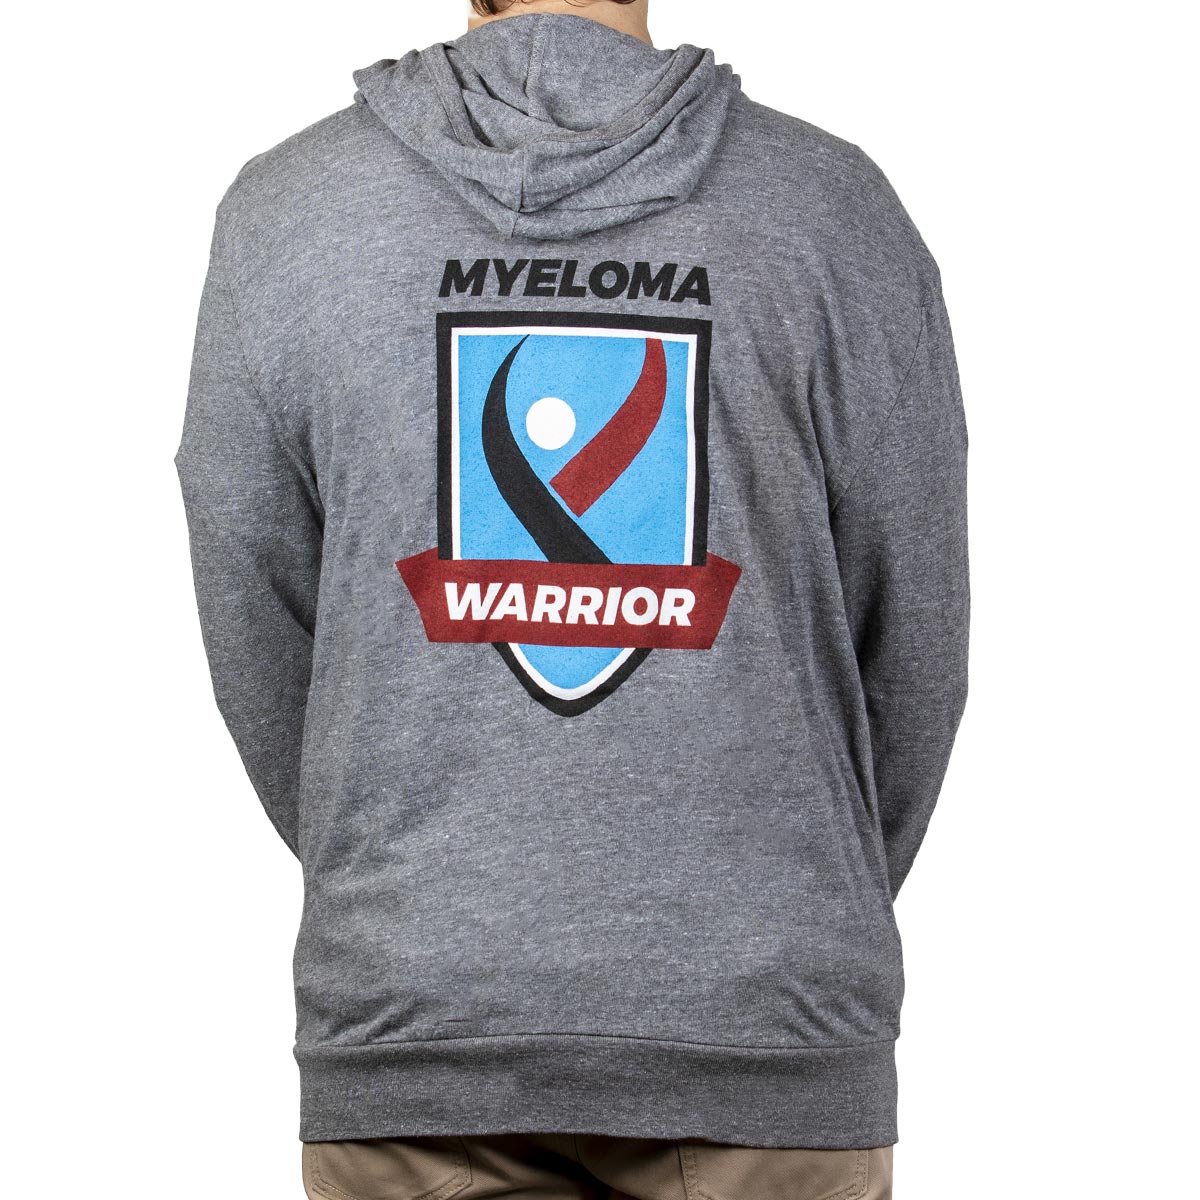 IMF Myeloma Warrior Hooded Sweatshirt - Dark Grey